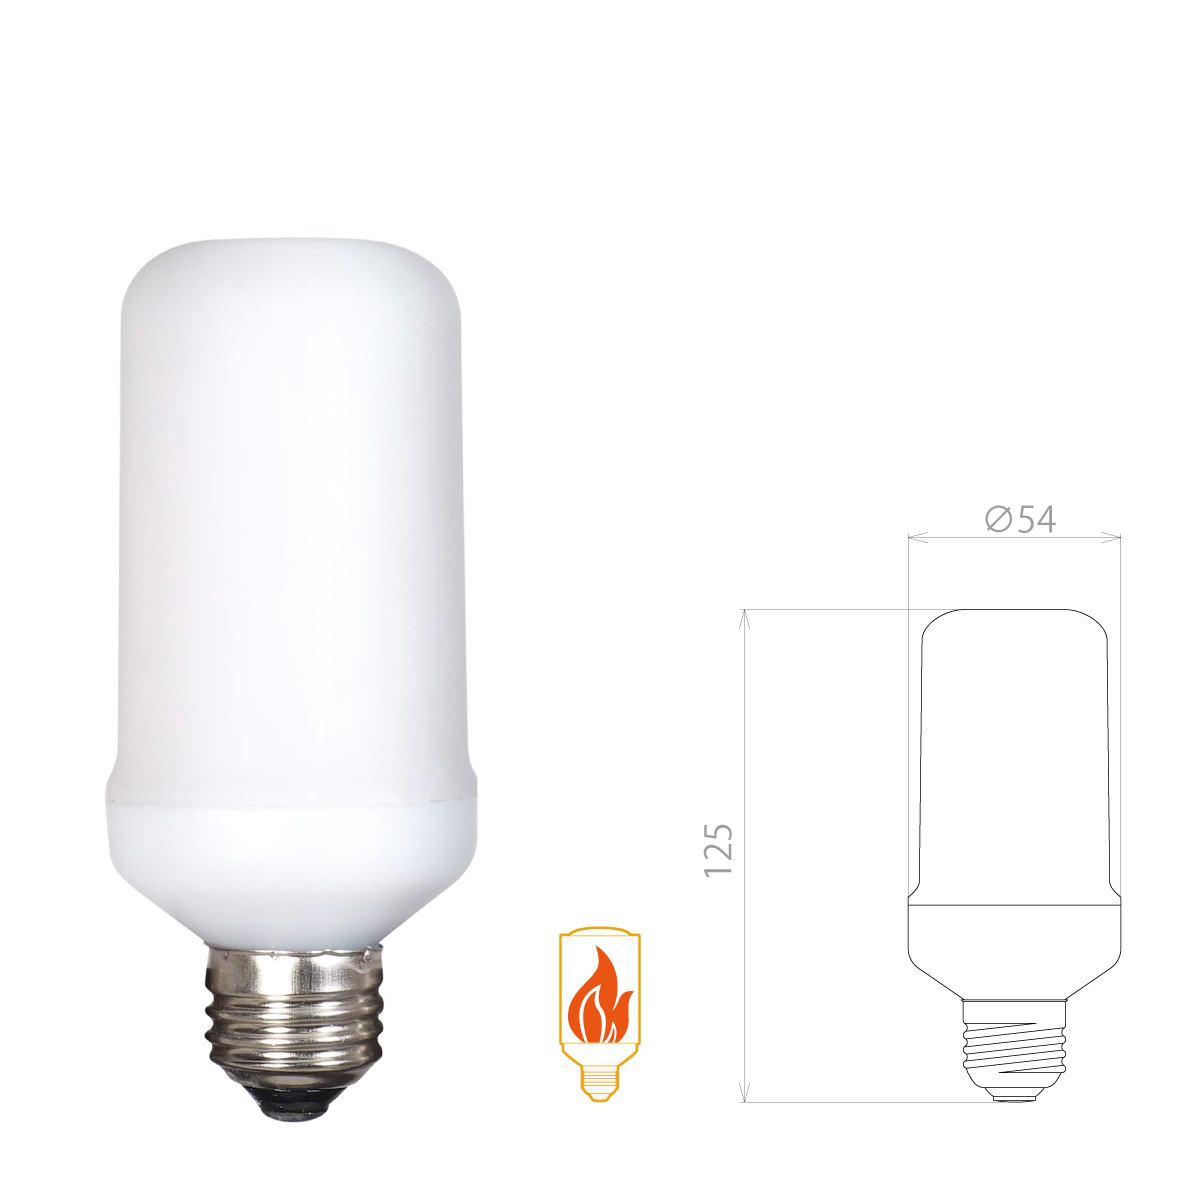 炎のゆらぎで、やすらぎの演出ができる LED炎セラピー電球 LDB20